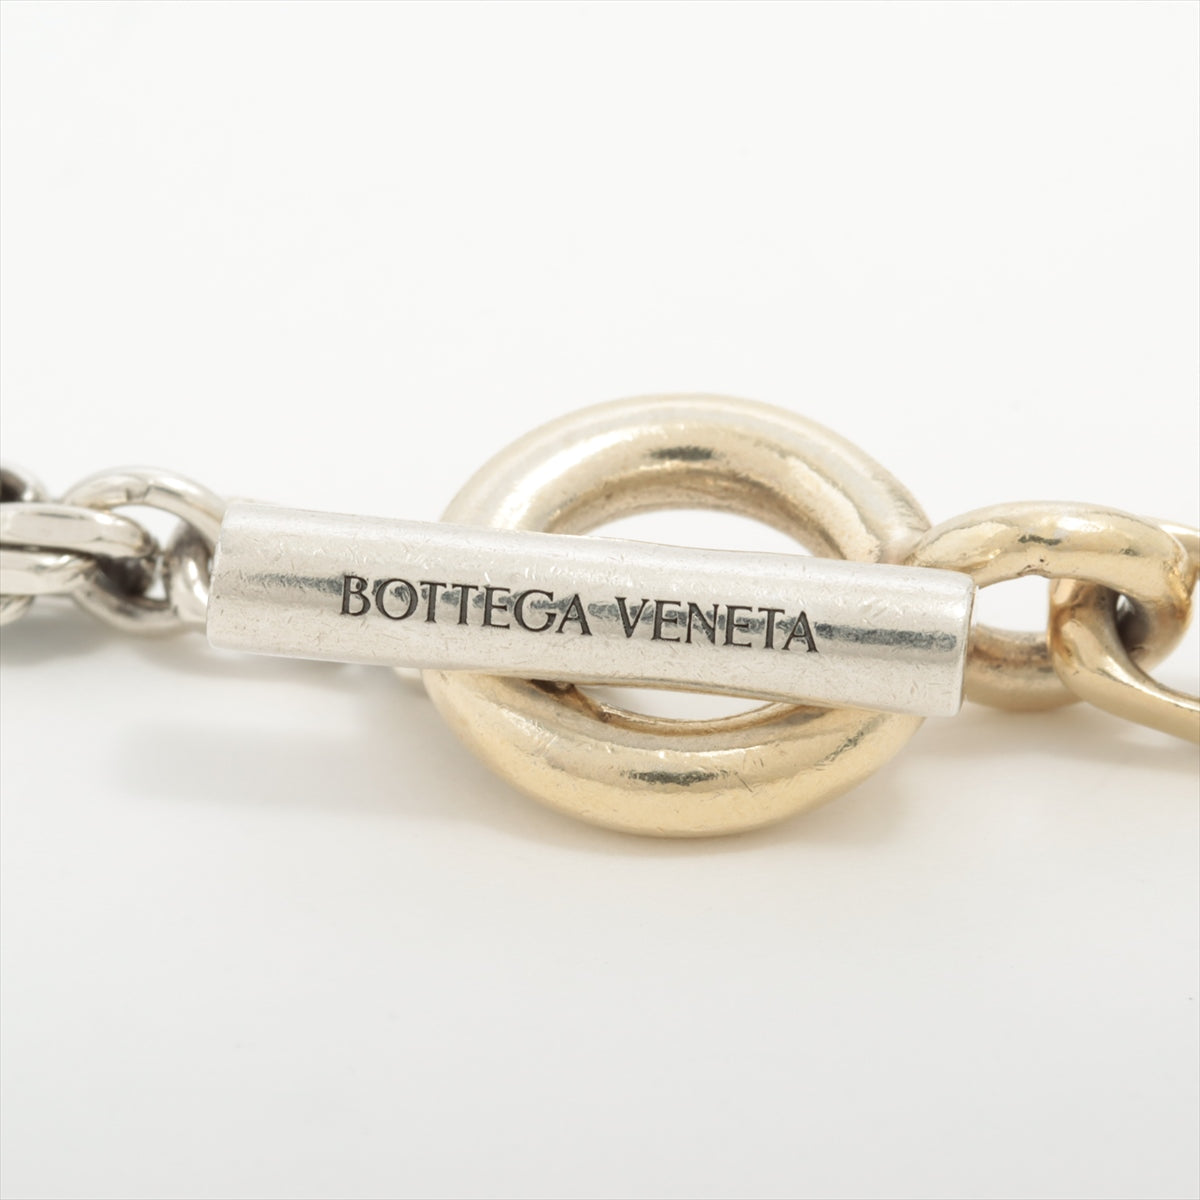 ボッテガヴェネタ ネックレス S 925 32.9g ゴールド×シルバー